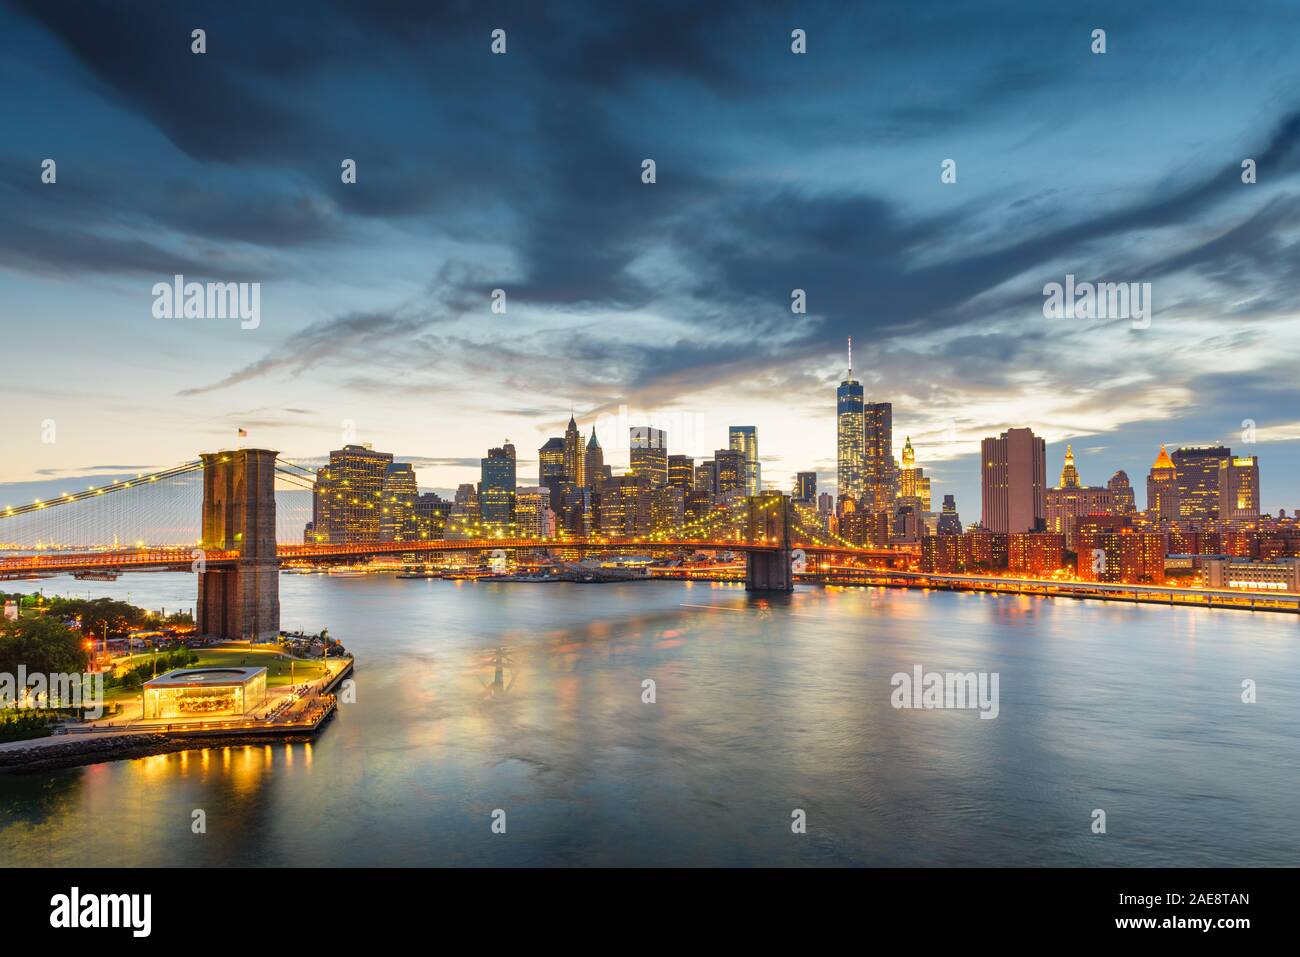 New York, New York, USA Le centre-ville de Manhattan skyline de la ville sur l'East River avec le Pont de Brooklyn au crépuscule. Banque D'Images